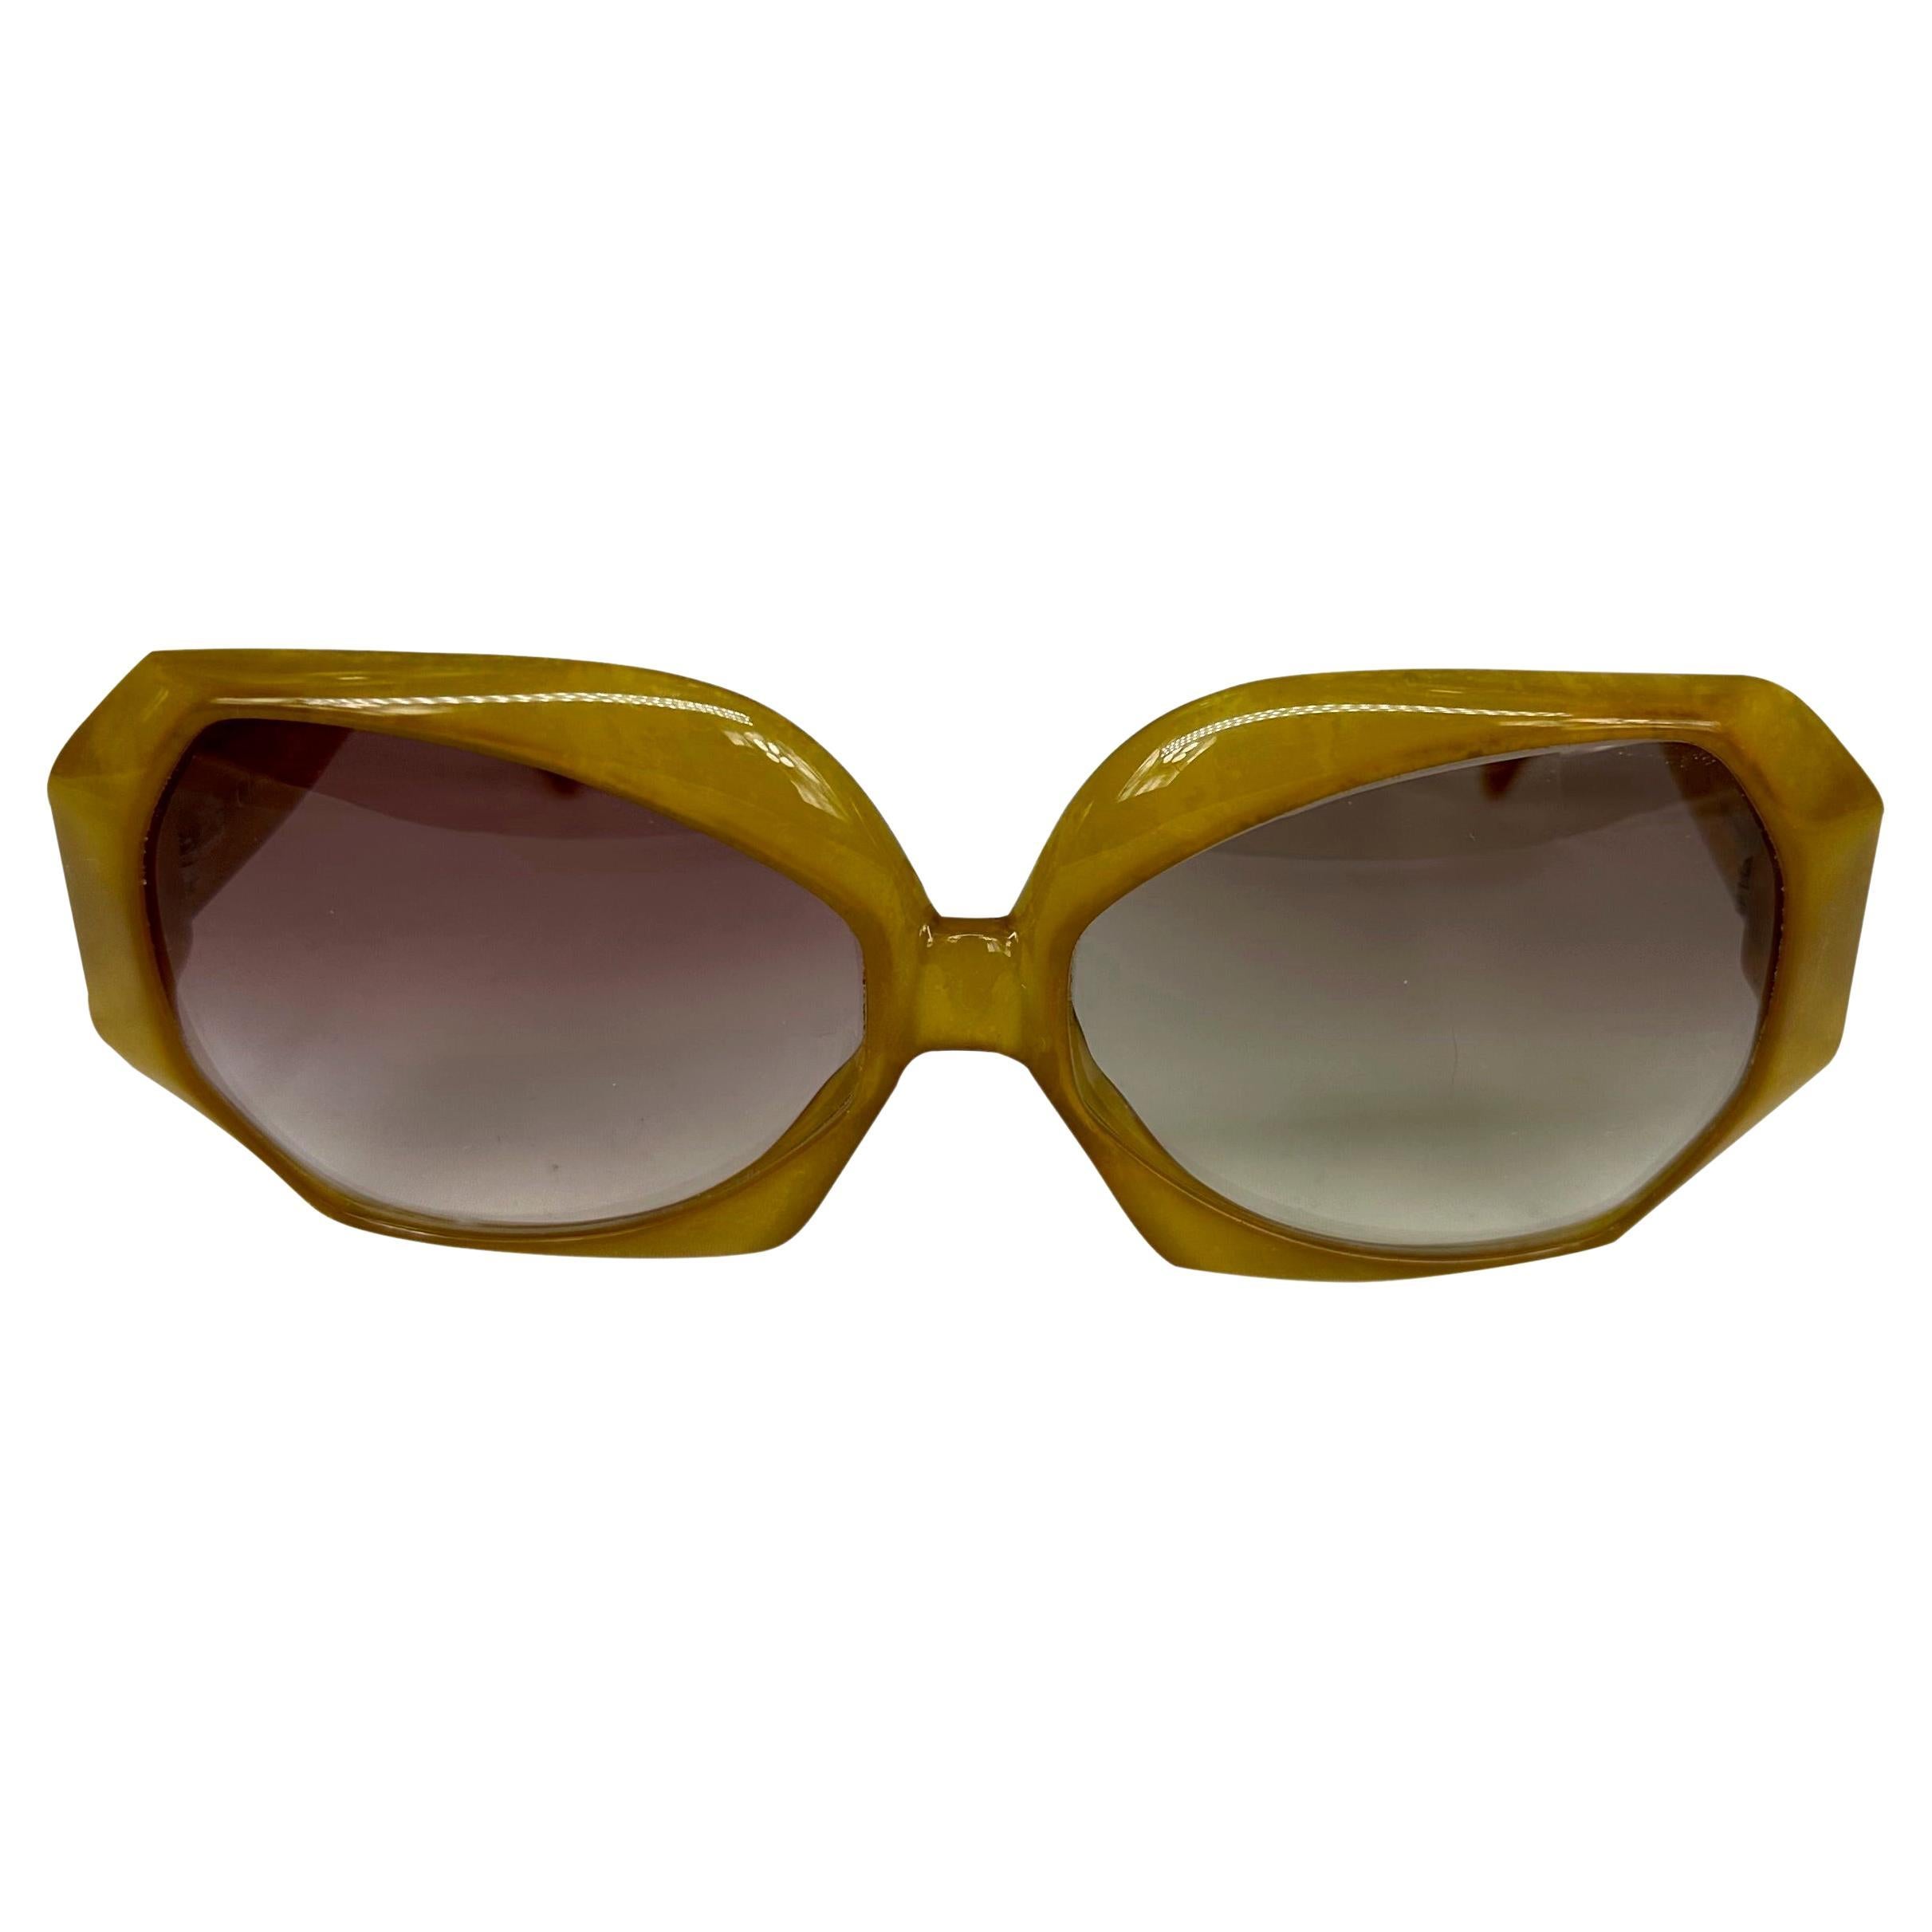 Nous vous présentons une paire de fabuleuses lunettes de soleil surdimensionnées Christian Dior. Datant des années 1980, ces lunettes de soleil couleur miel présentent une monture octogonale surdimensionnée et sont complétées par un logo rétro 